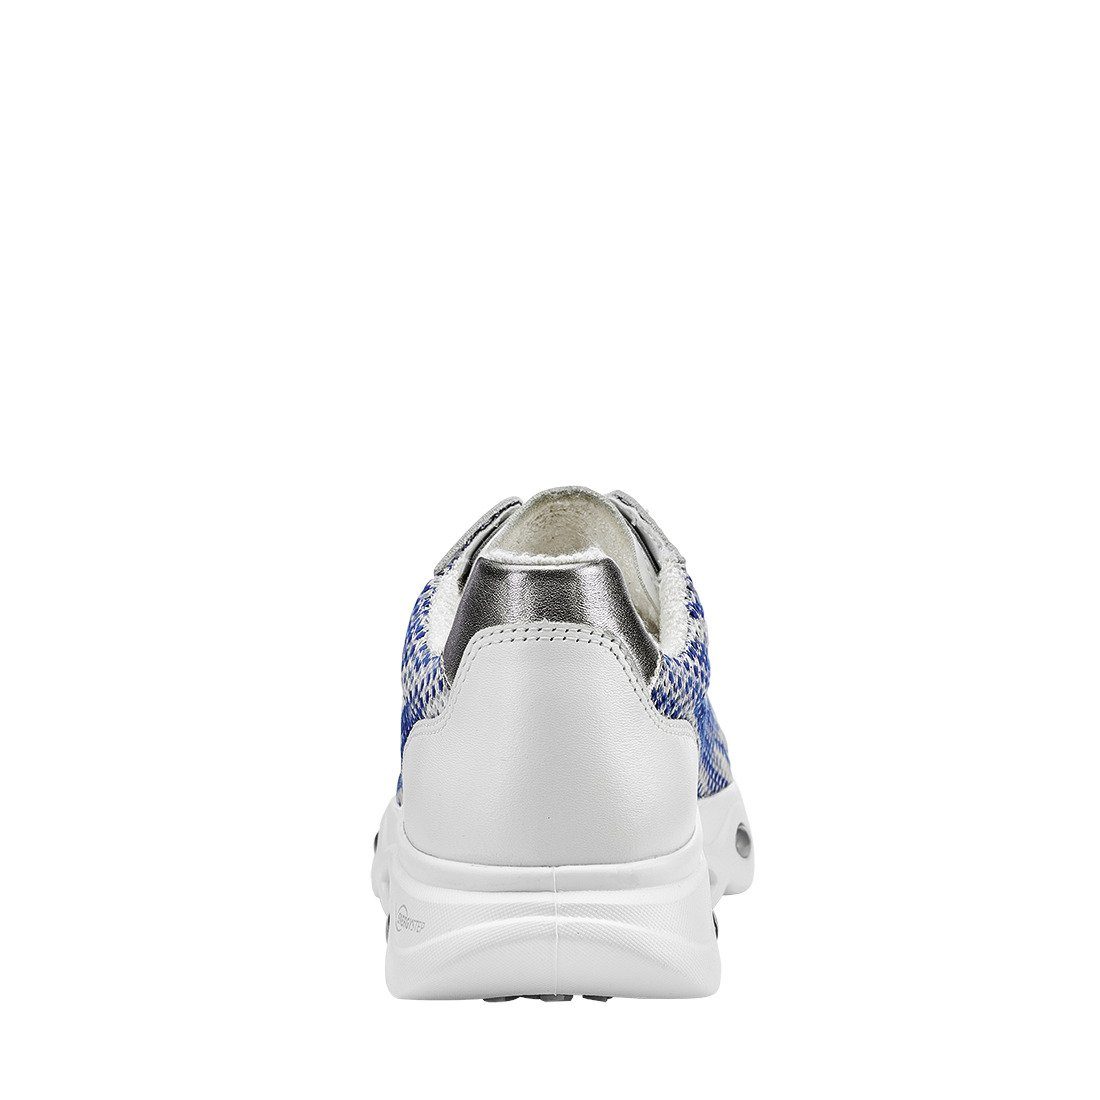 Schuhe, Textil Ara blau 042014 Sneaker - Sneaker Ara Damen Malibu